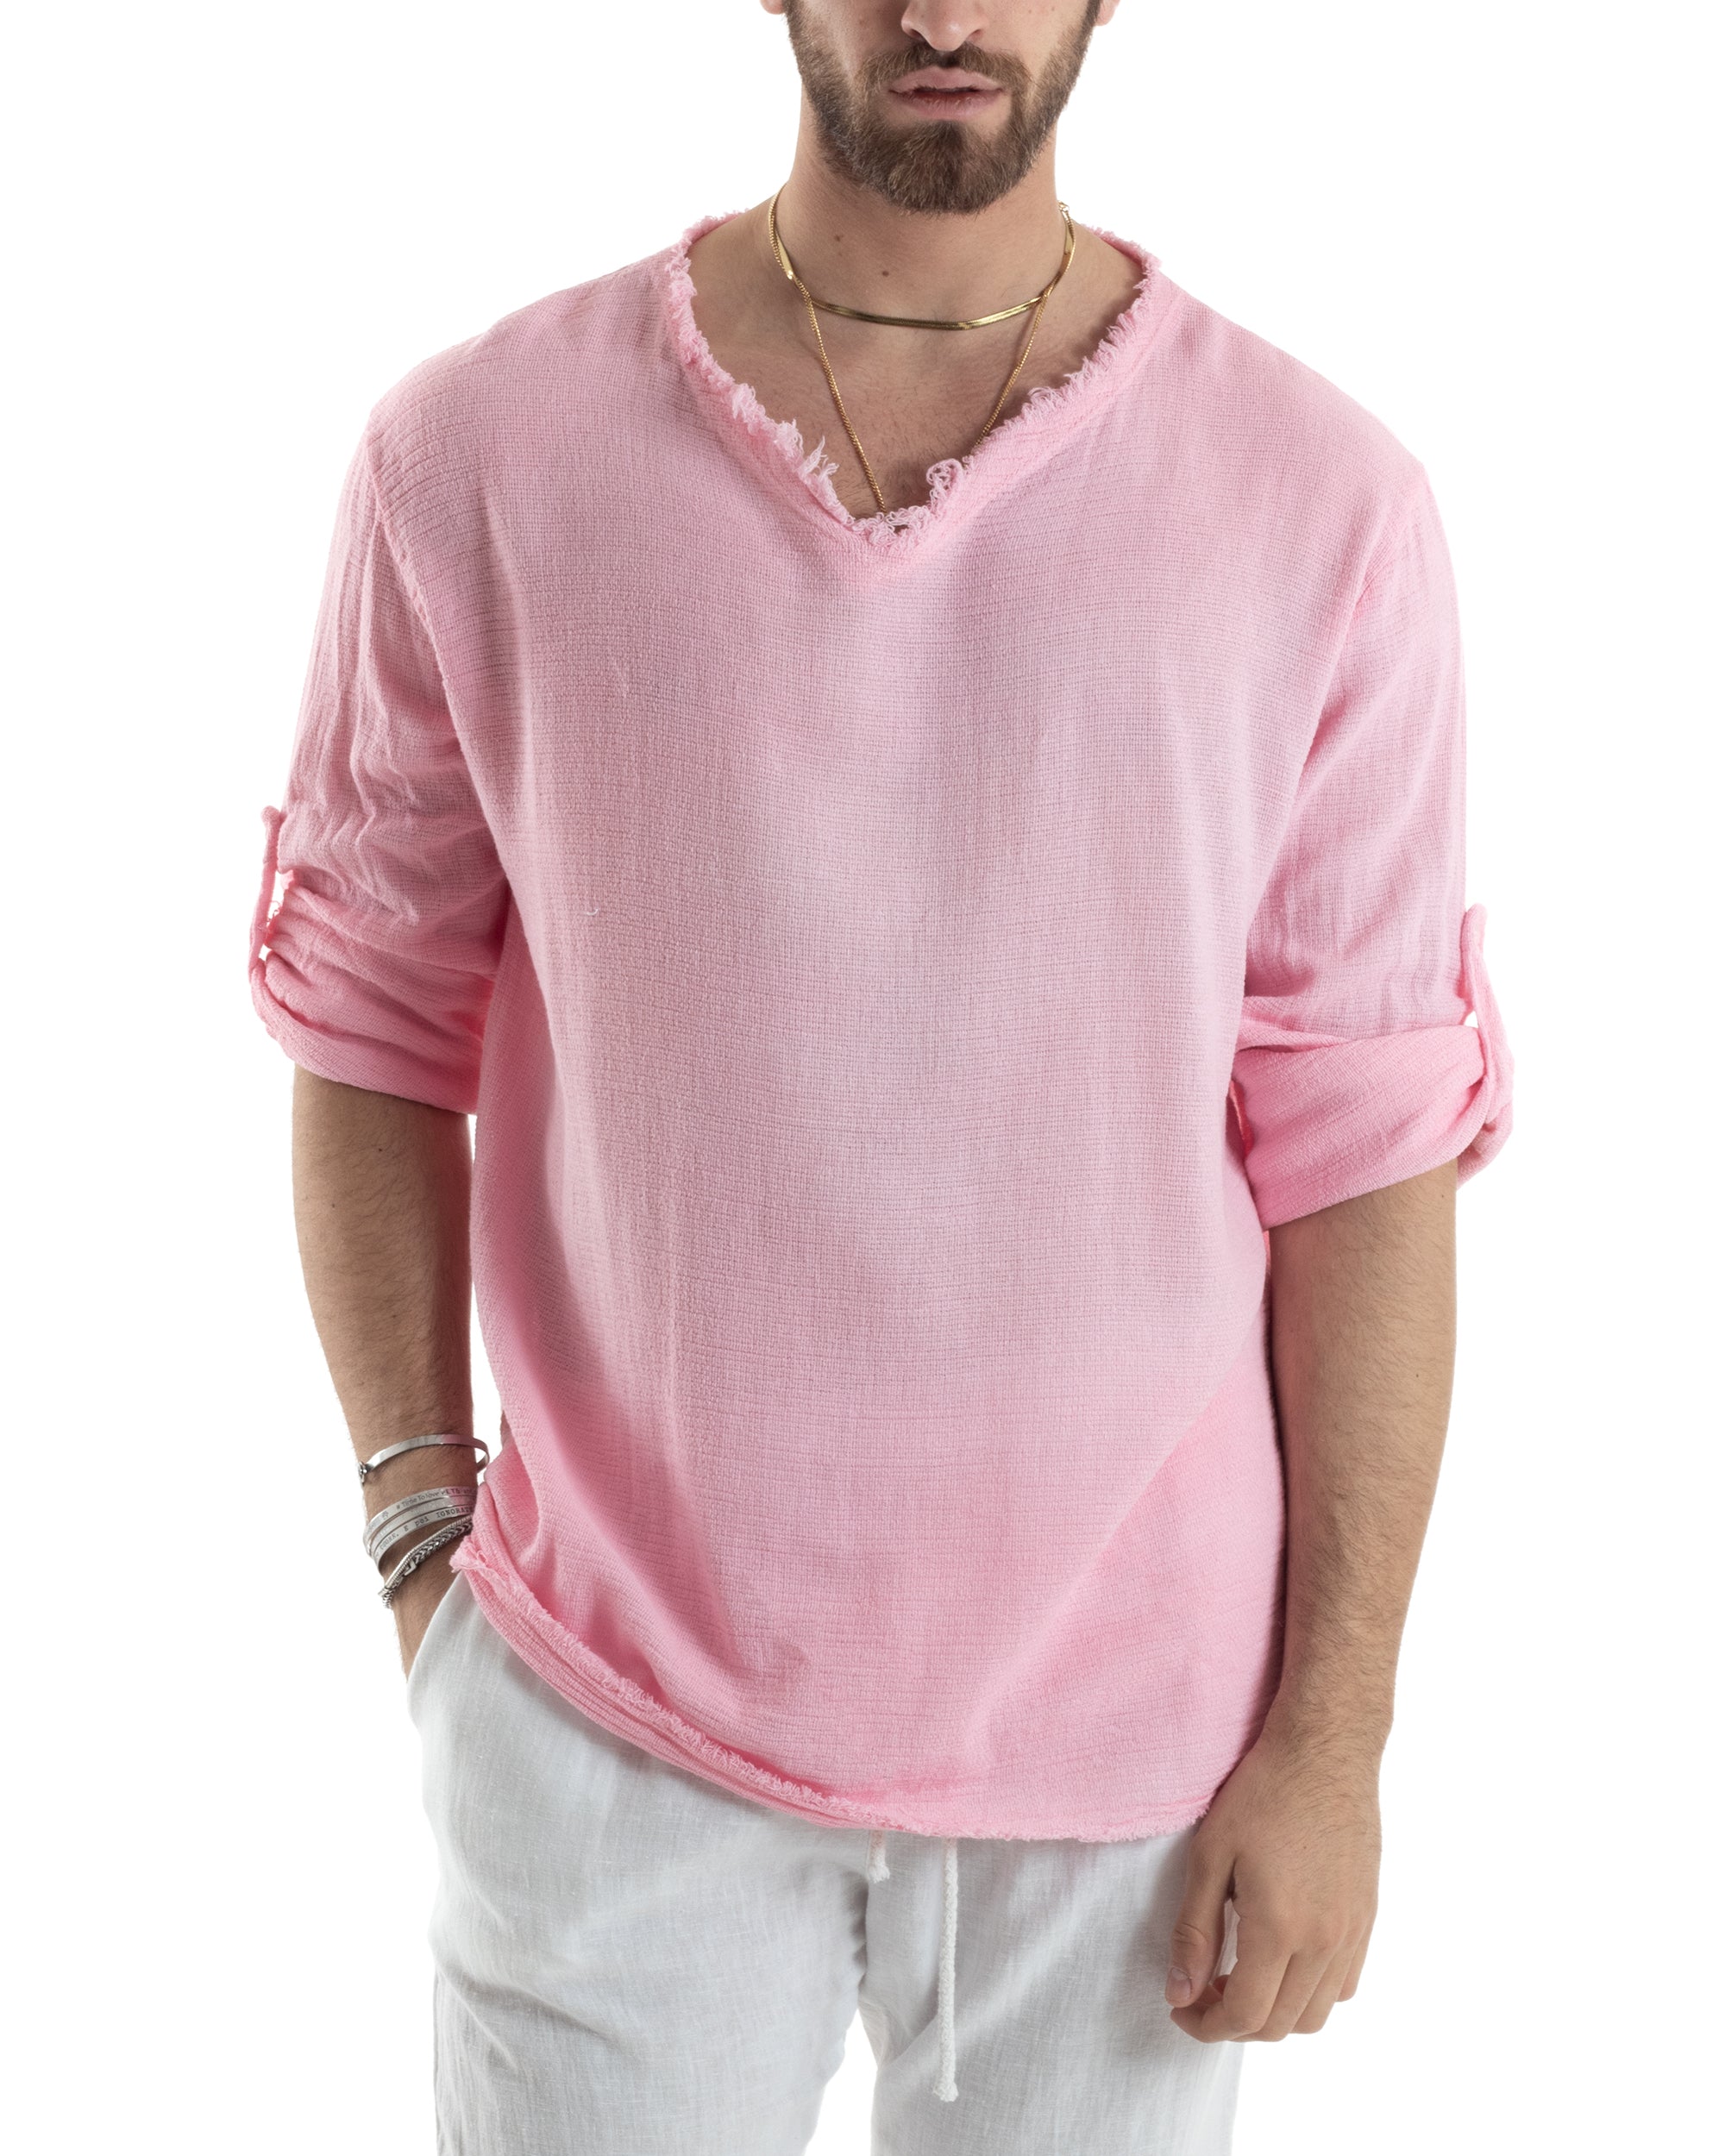 Camicia Uomo Manica Lunga Casacca Cotone Lino Scollo V Sfrangiata Regular Fit Rosa GIOSAL-C2850A